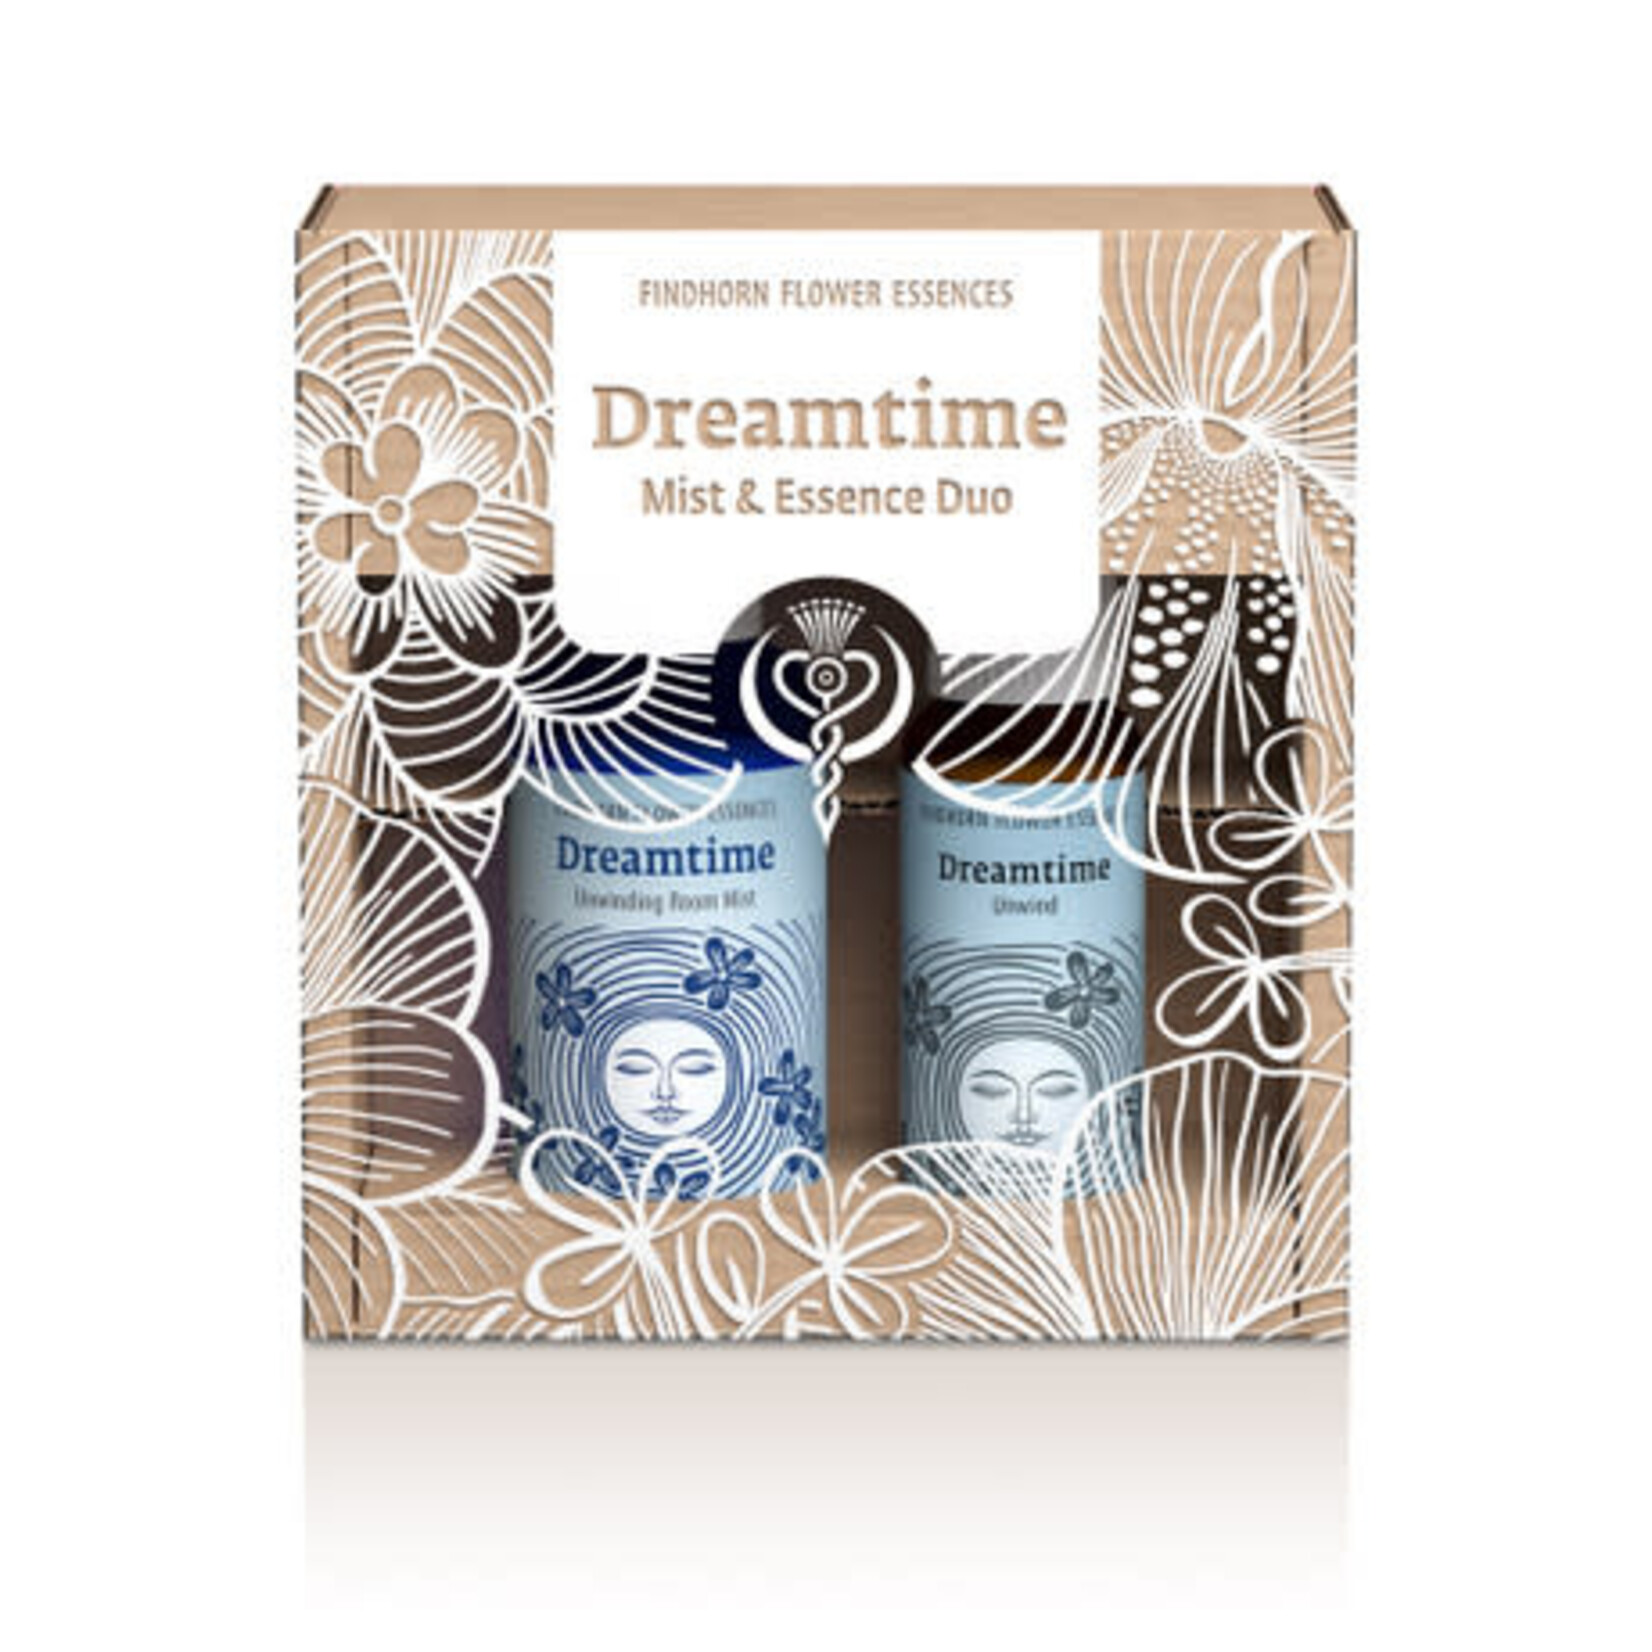 Findhorn Essences Dreamtime duopakket - voor een herstellende & rustige slaap